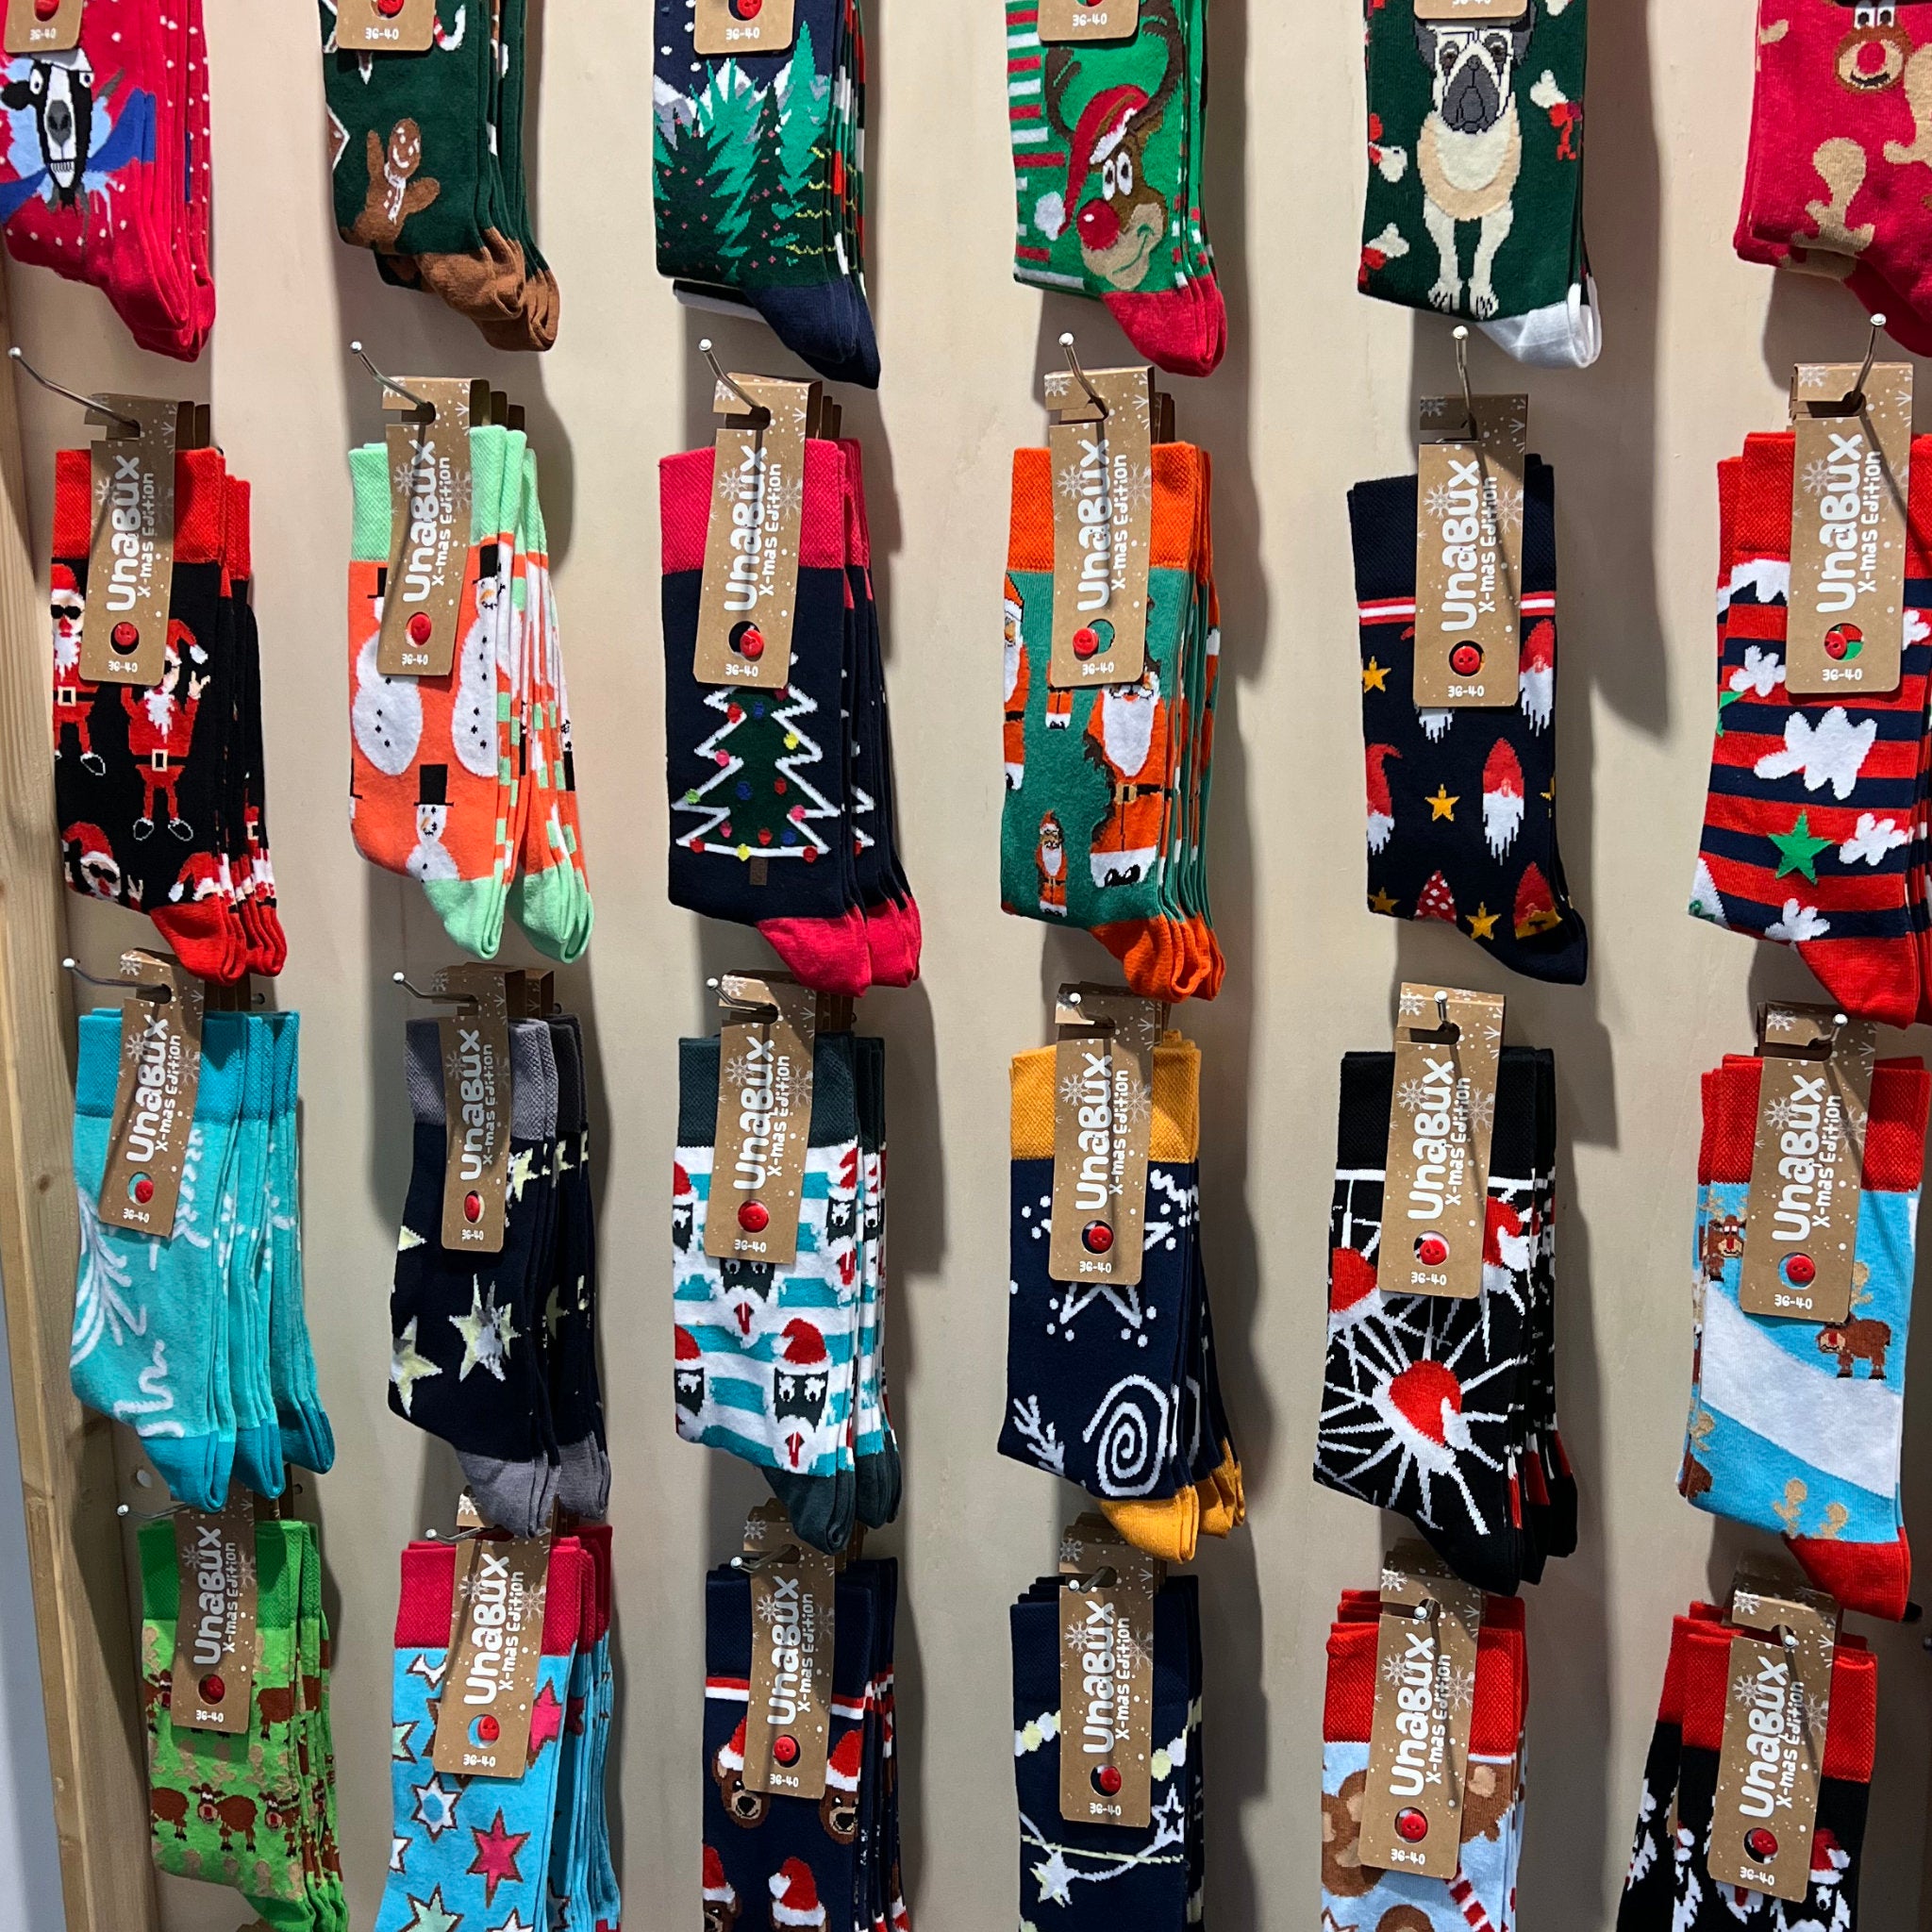 Bunt un ein bisschen kitschig sind die weihnachtlichen Socken. Mit Bulldoggen, Schneemann und Co.